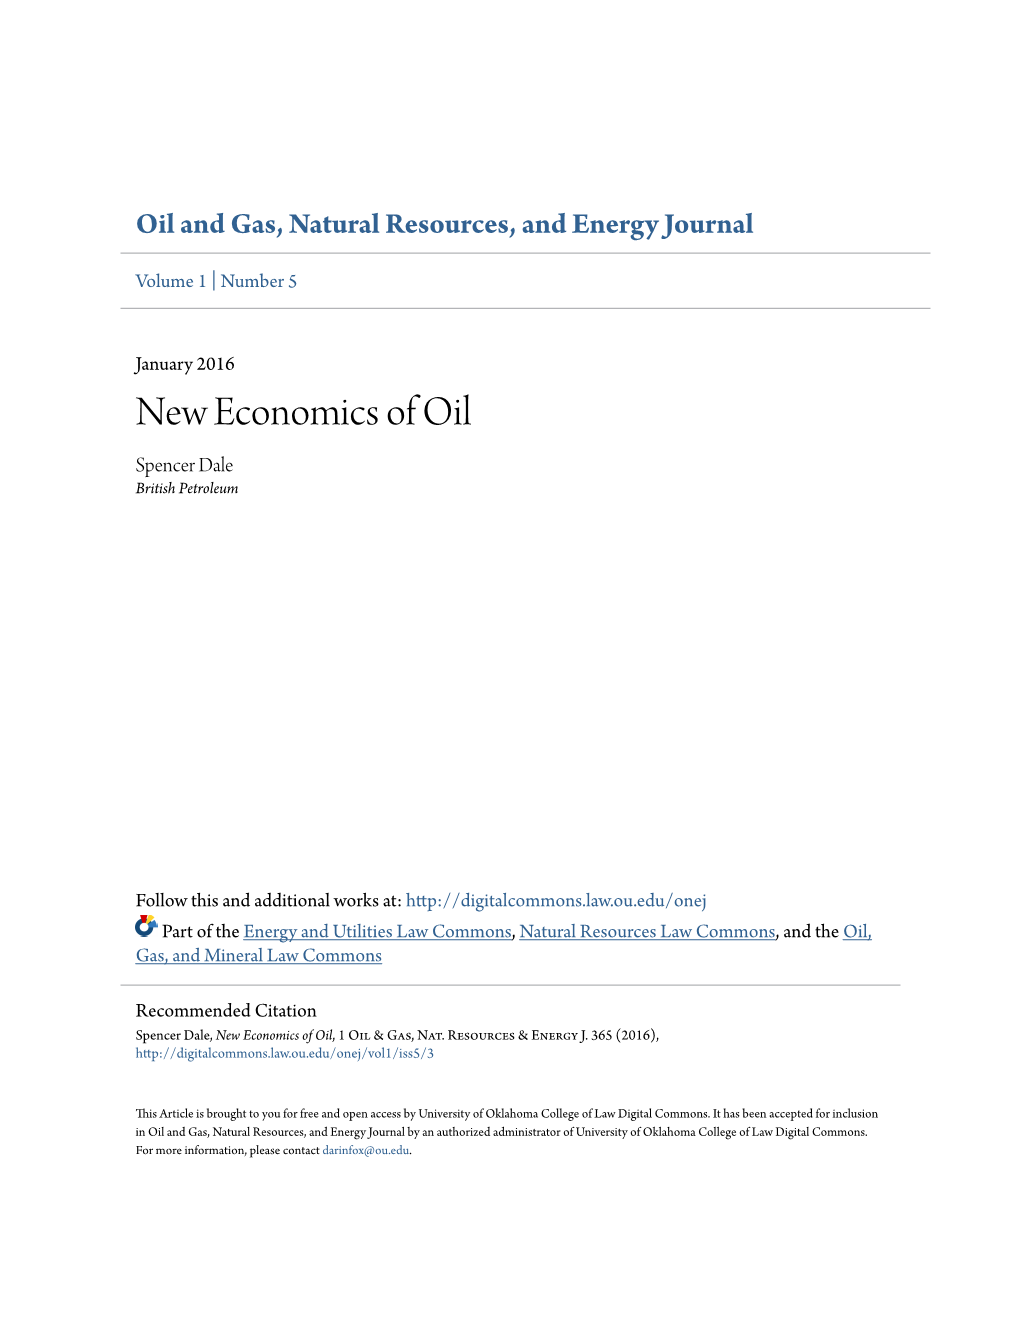 New Economics of Oil Spencer Dale British Petroleum